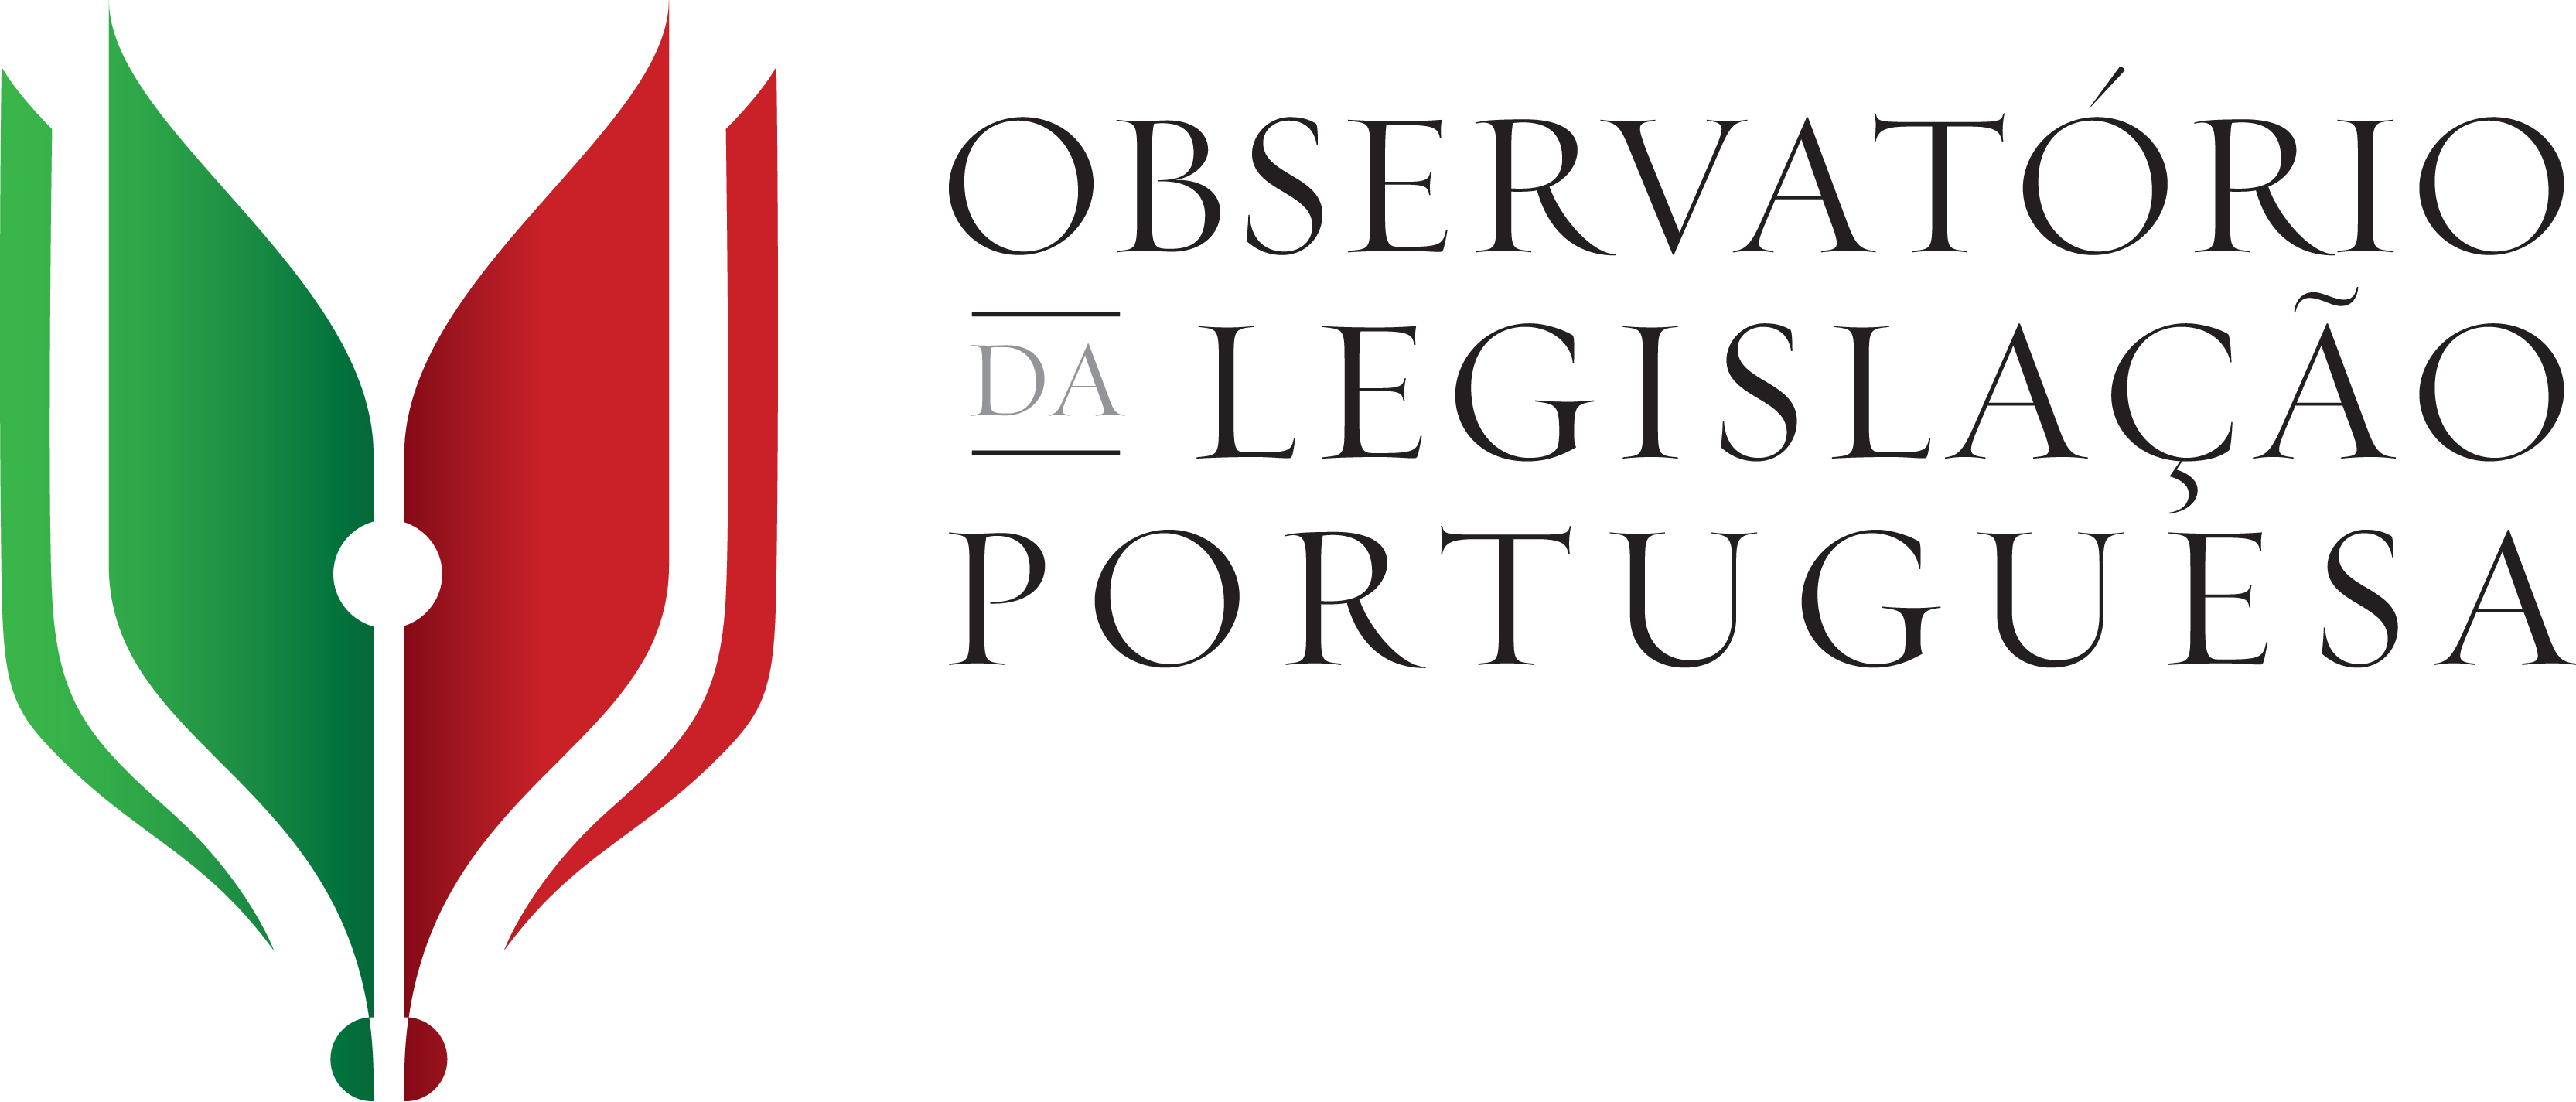 Observatório da Legislação Portuguesa